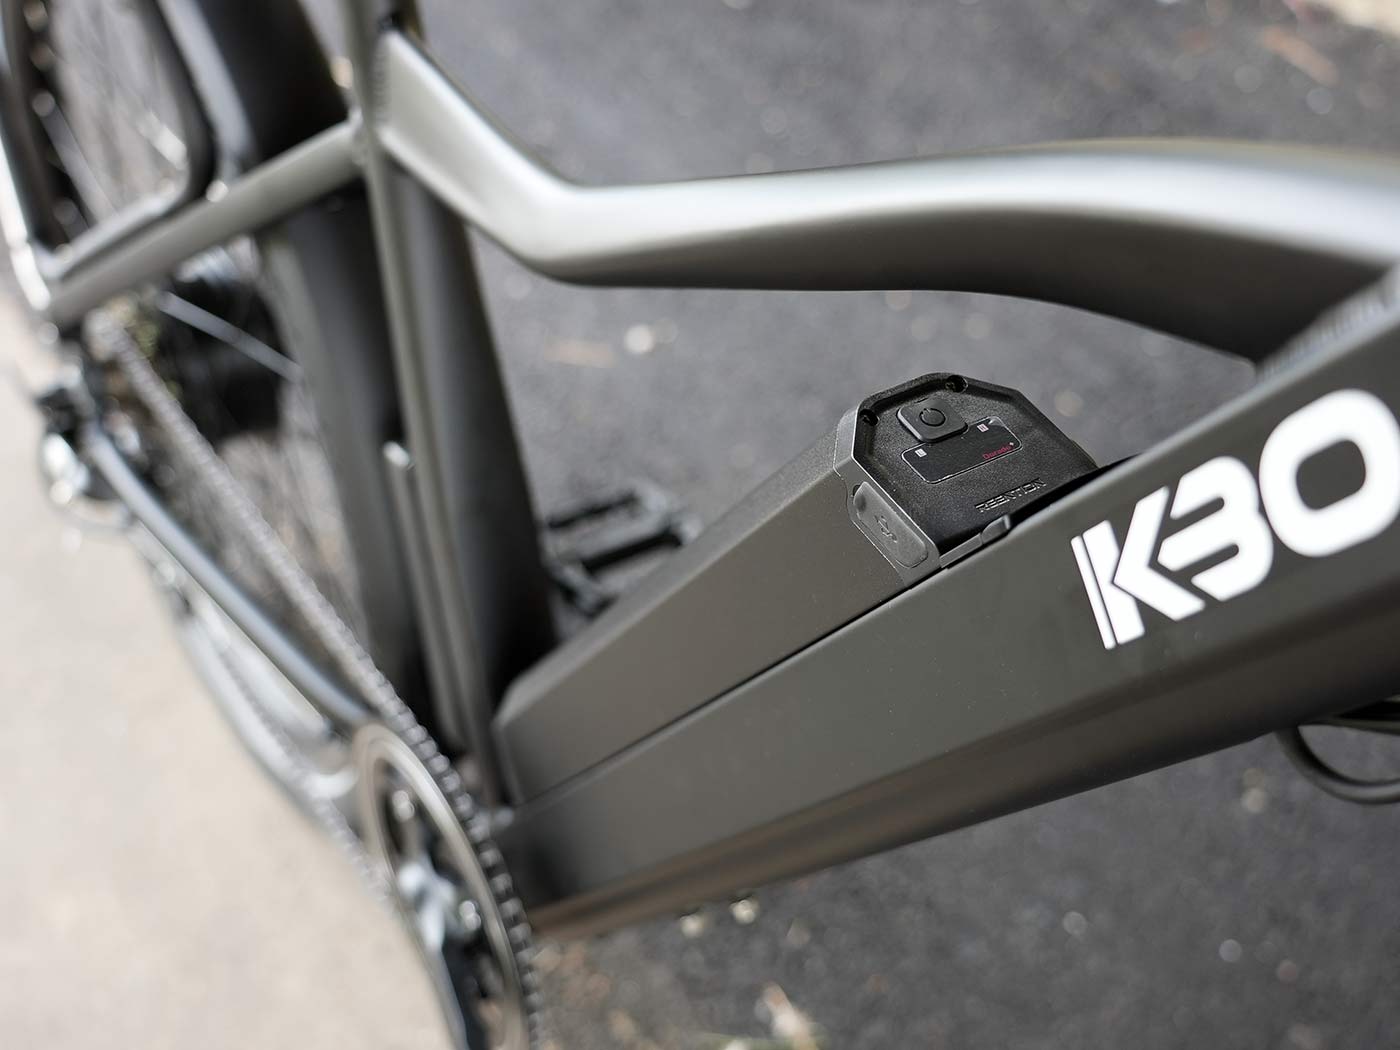 kbo breeze commuter e-bike battery